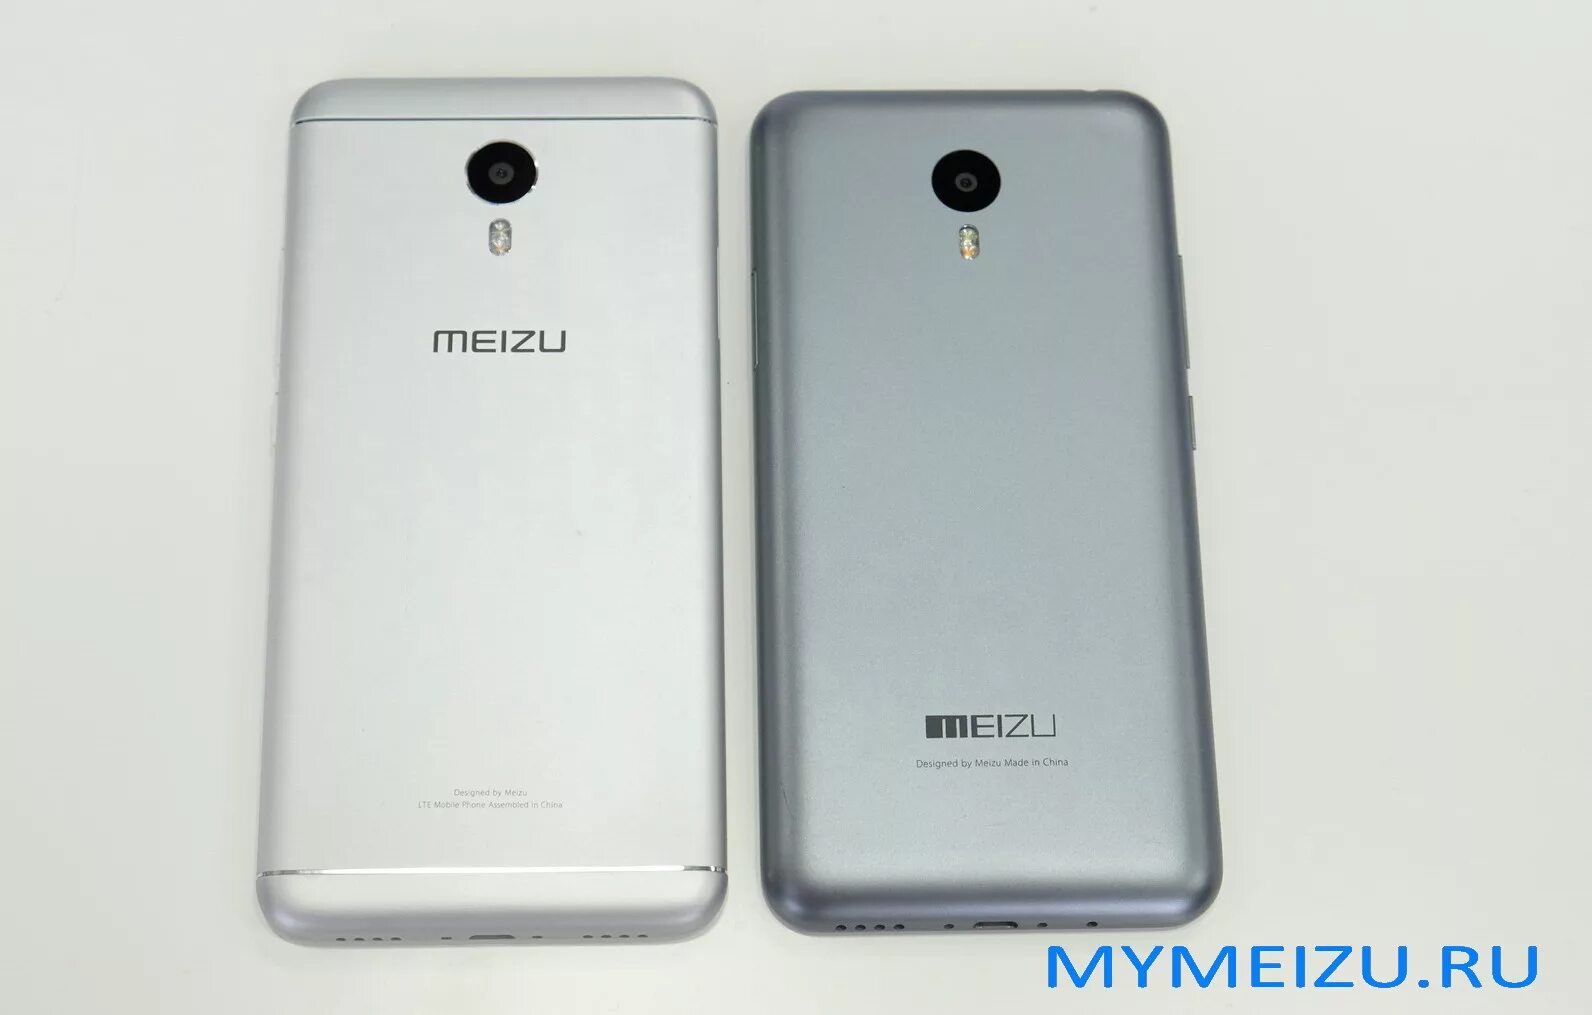 Meizu m711h. Meizu m3 Note. Мейзу m681h. Meizu m3 Mini.